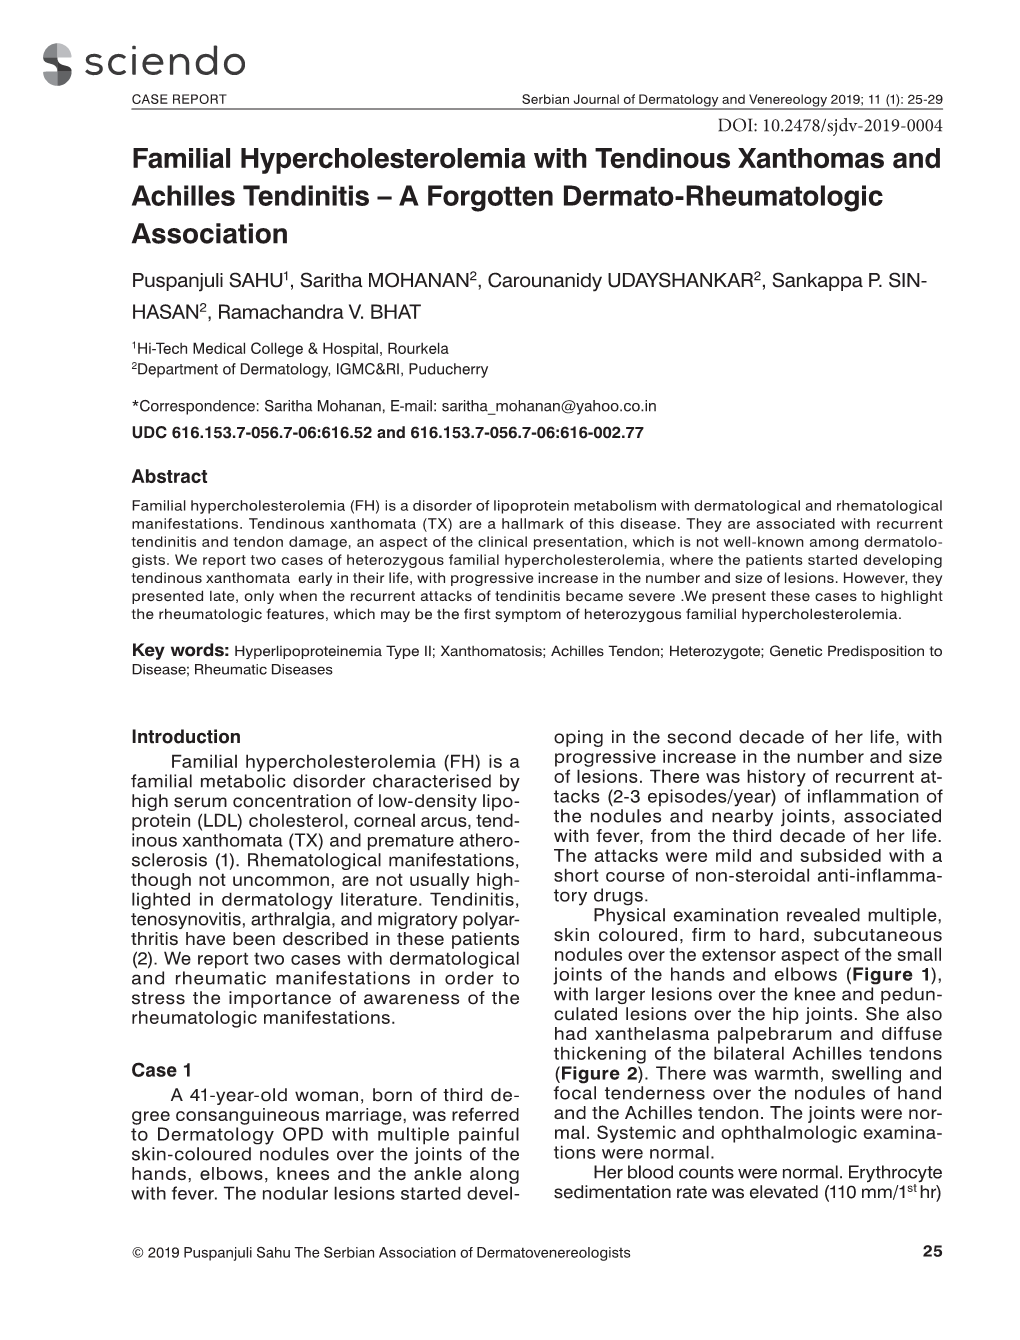 Familial Hypercholesterolemia with Tendinous Xanthomas and Achilles Tendinitis – a Forgotten Dermato-Rheumatologic Association